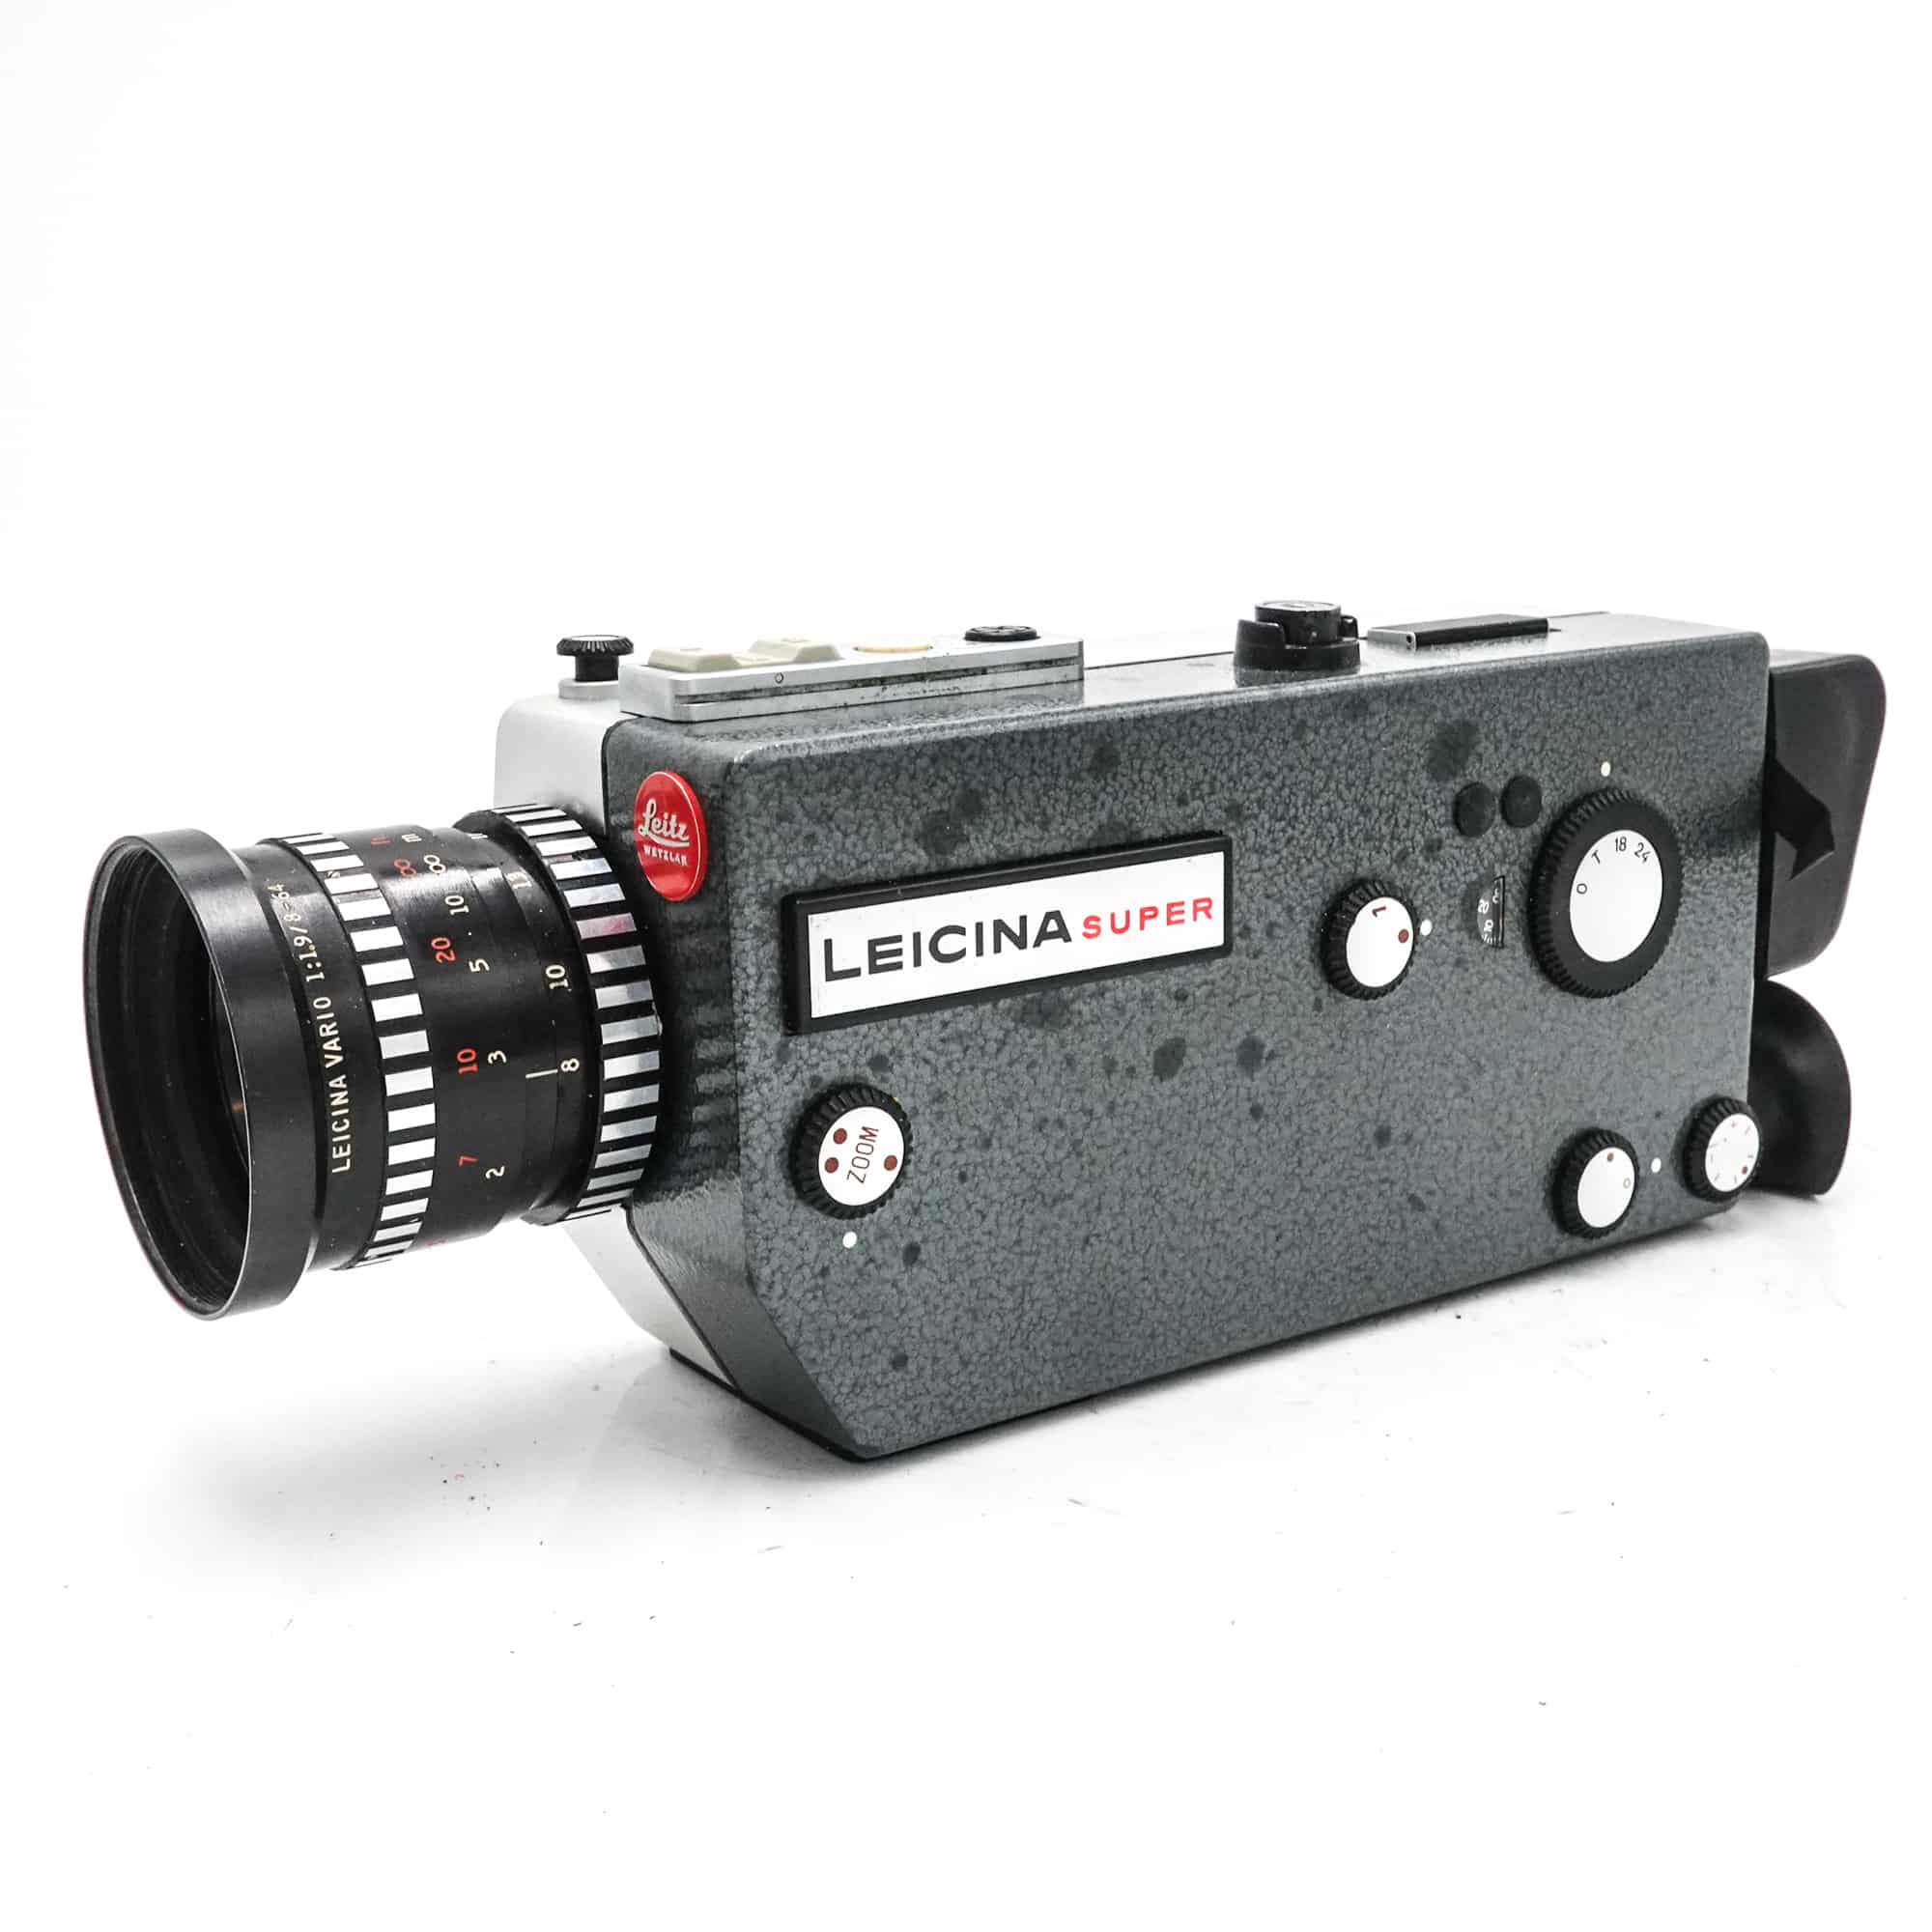 Leicina Super 8 Camera